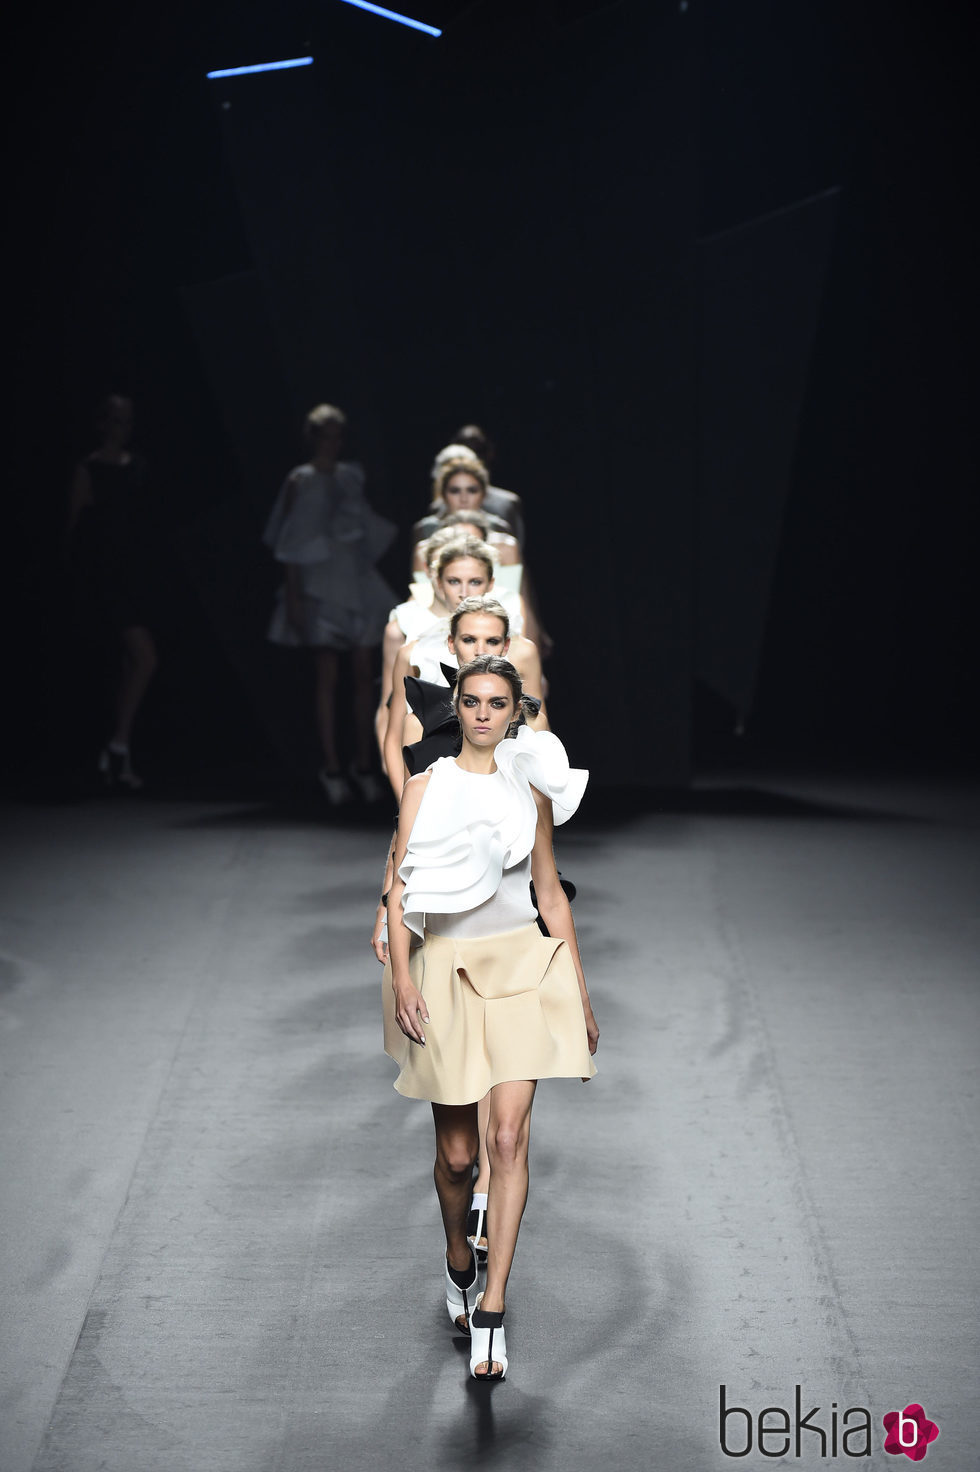 Carrusel del desfile de Amaya Arzuaga para primavera/verano 2015 en Madrid Fashion Week